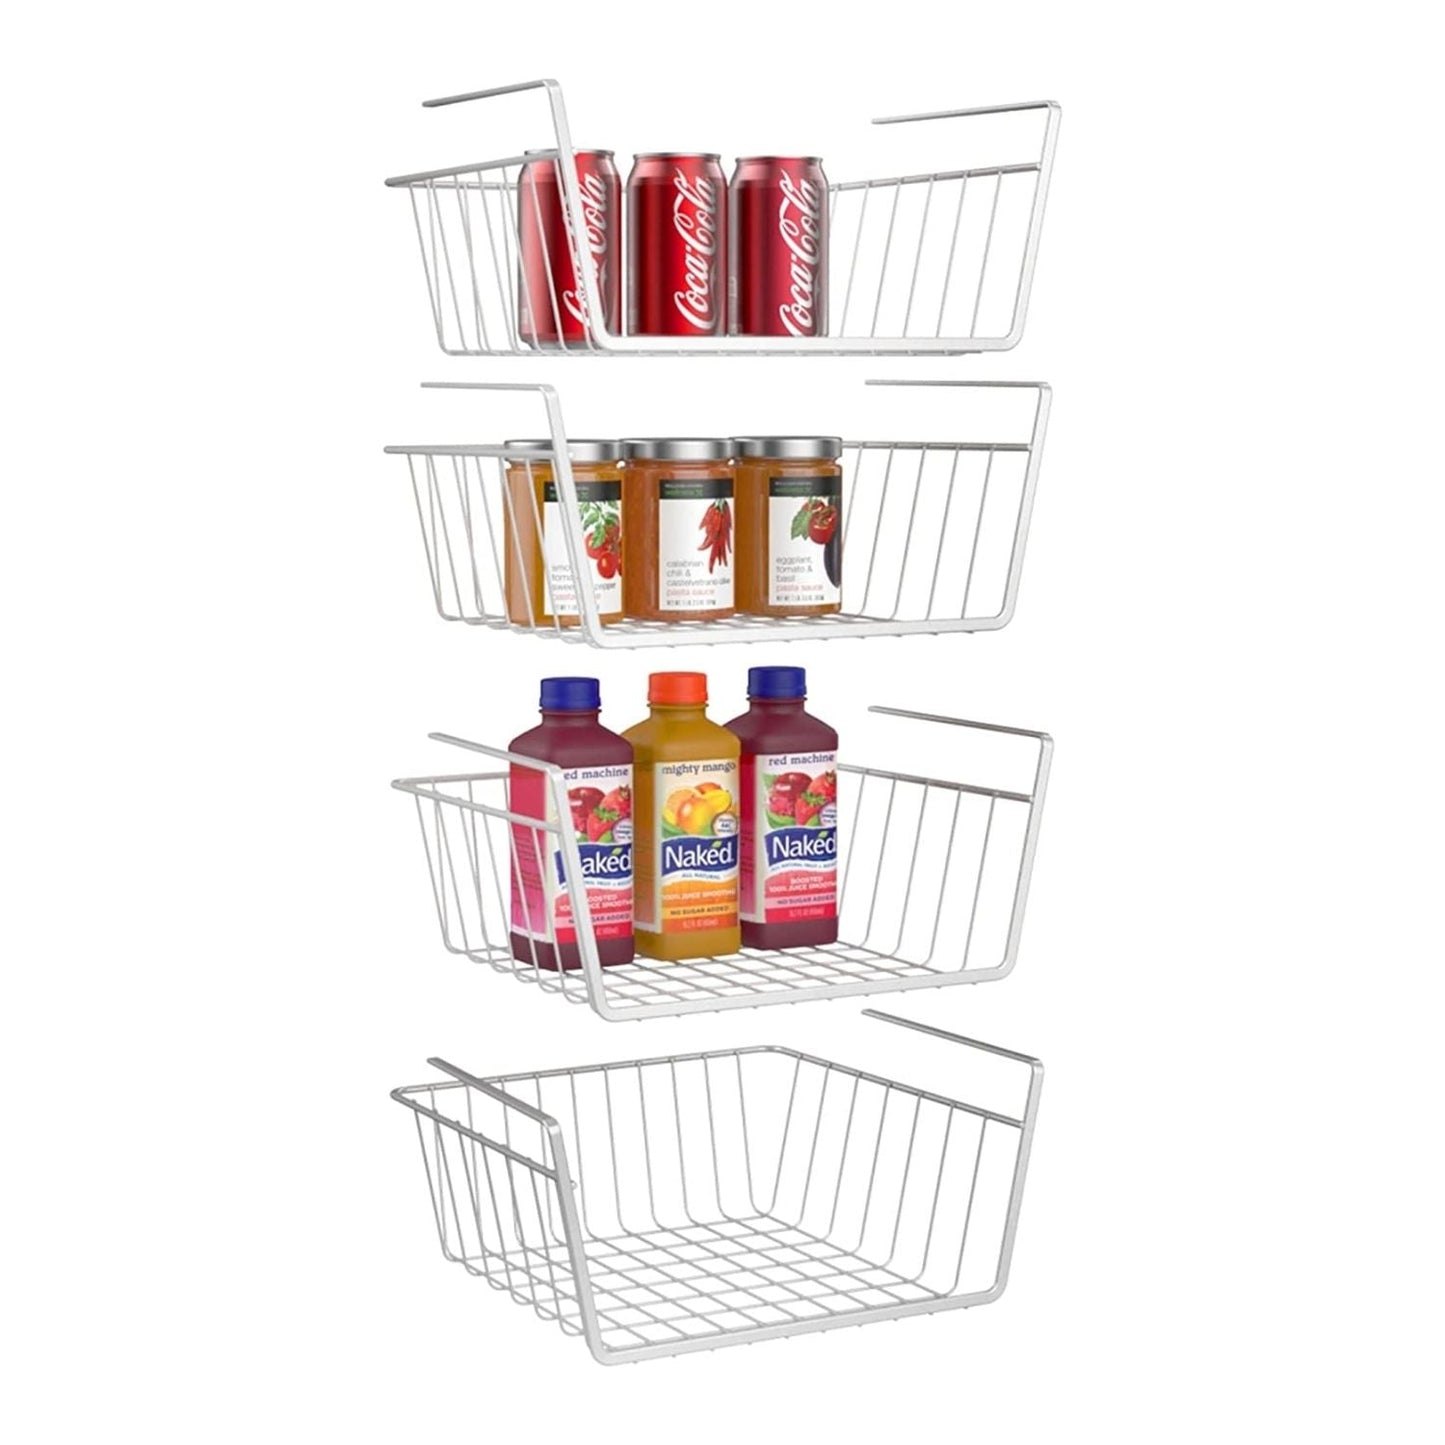 https://www.ispecle.com/cdn/shop/products/hanging-under-cabinet-shelf-basket-4-pack-hr014-222737_1445x.jpg?v=1641471578